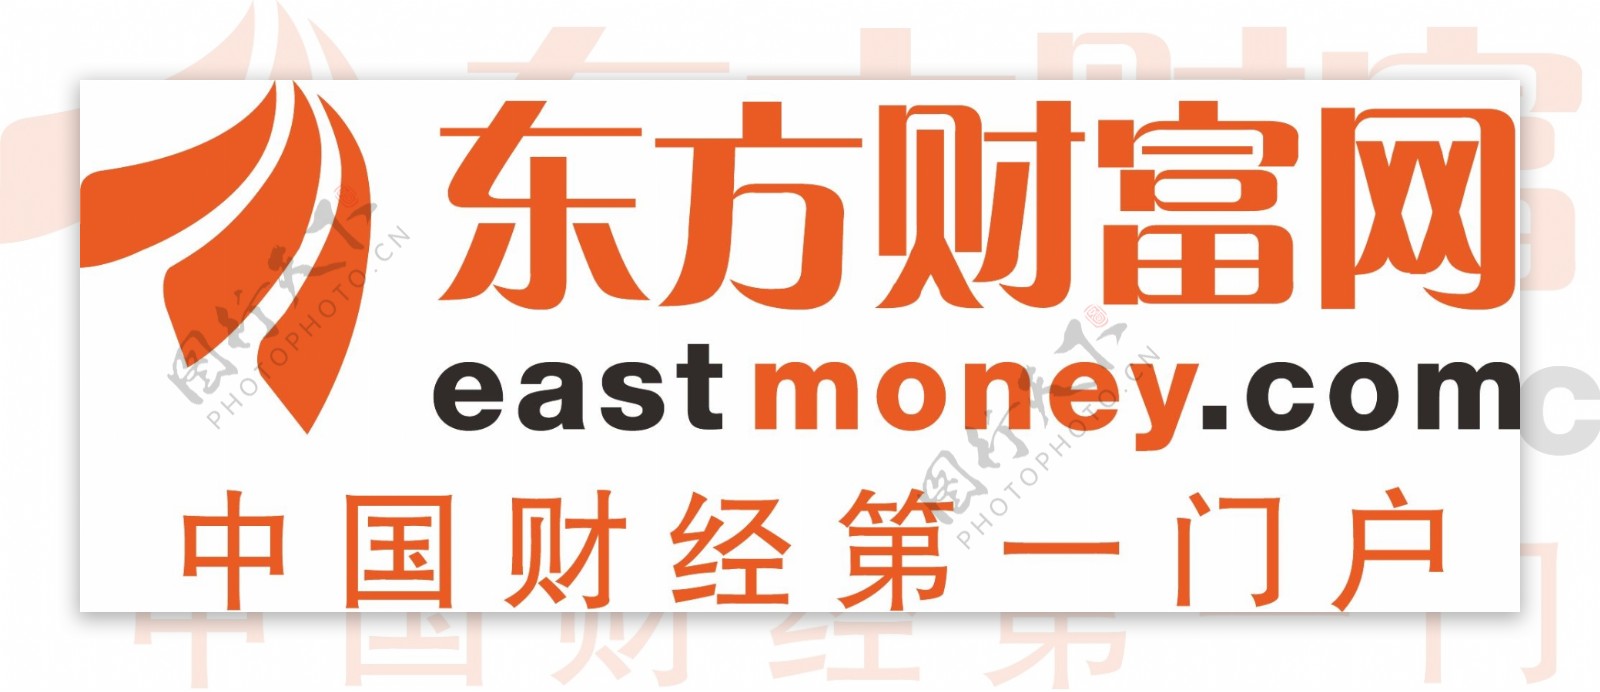 东方财富网logo图片